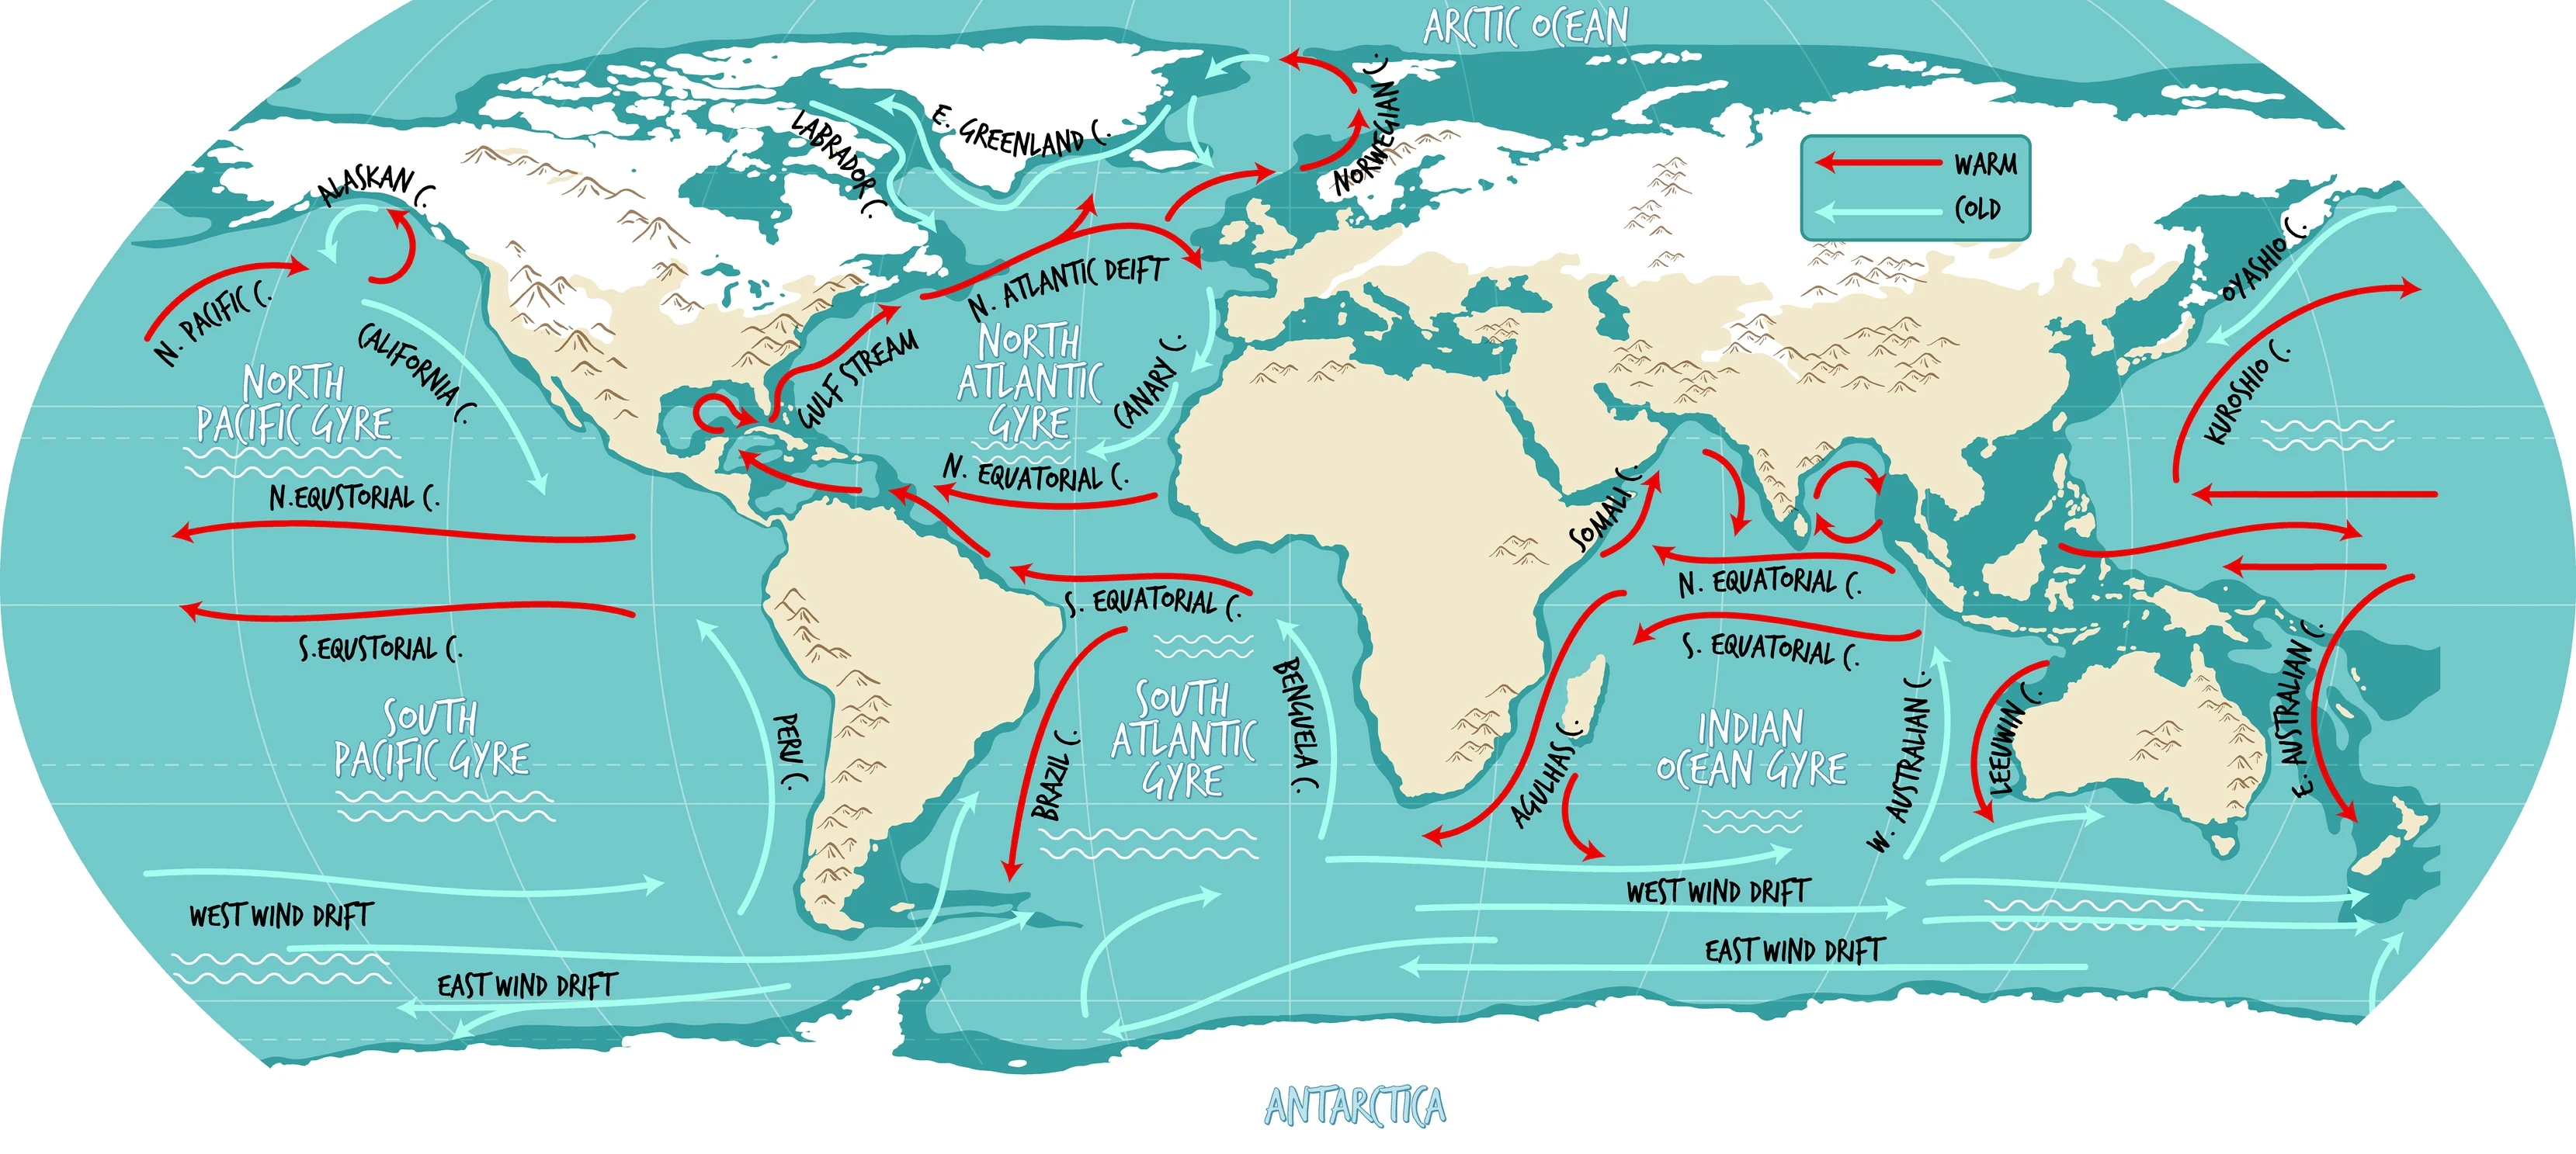 海流の名称を記したイラスト入り世界地図。